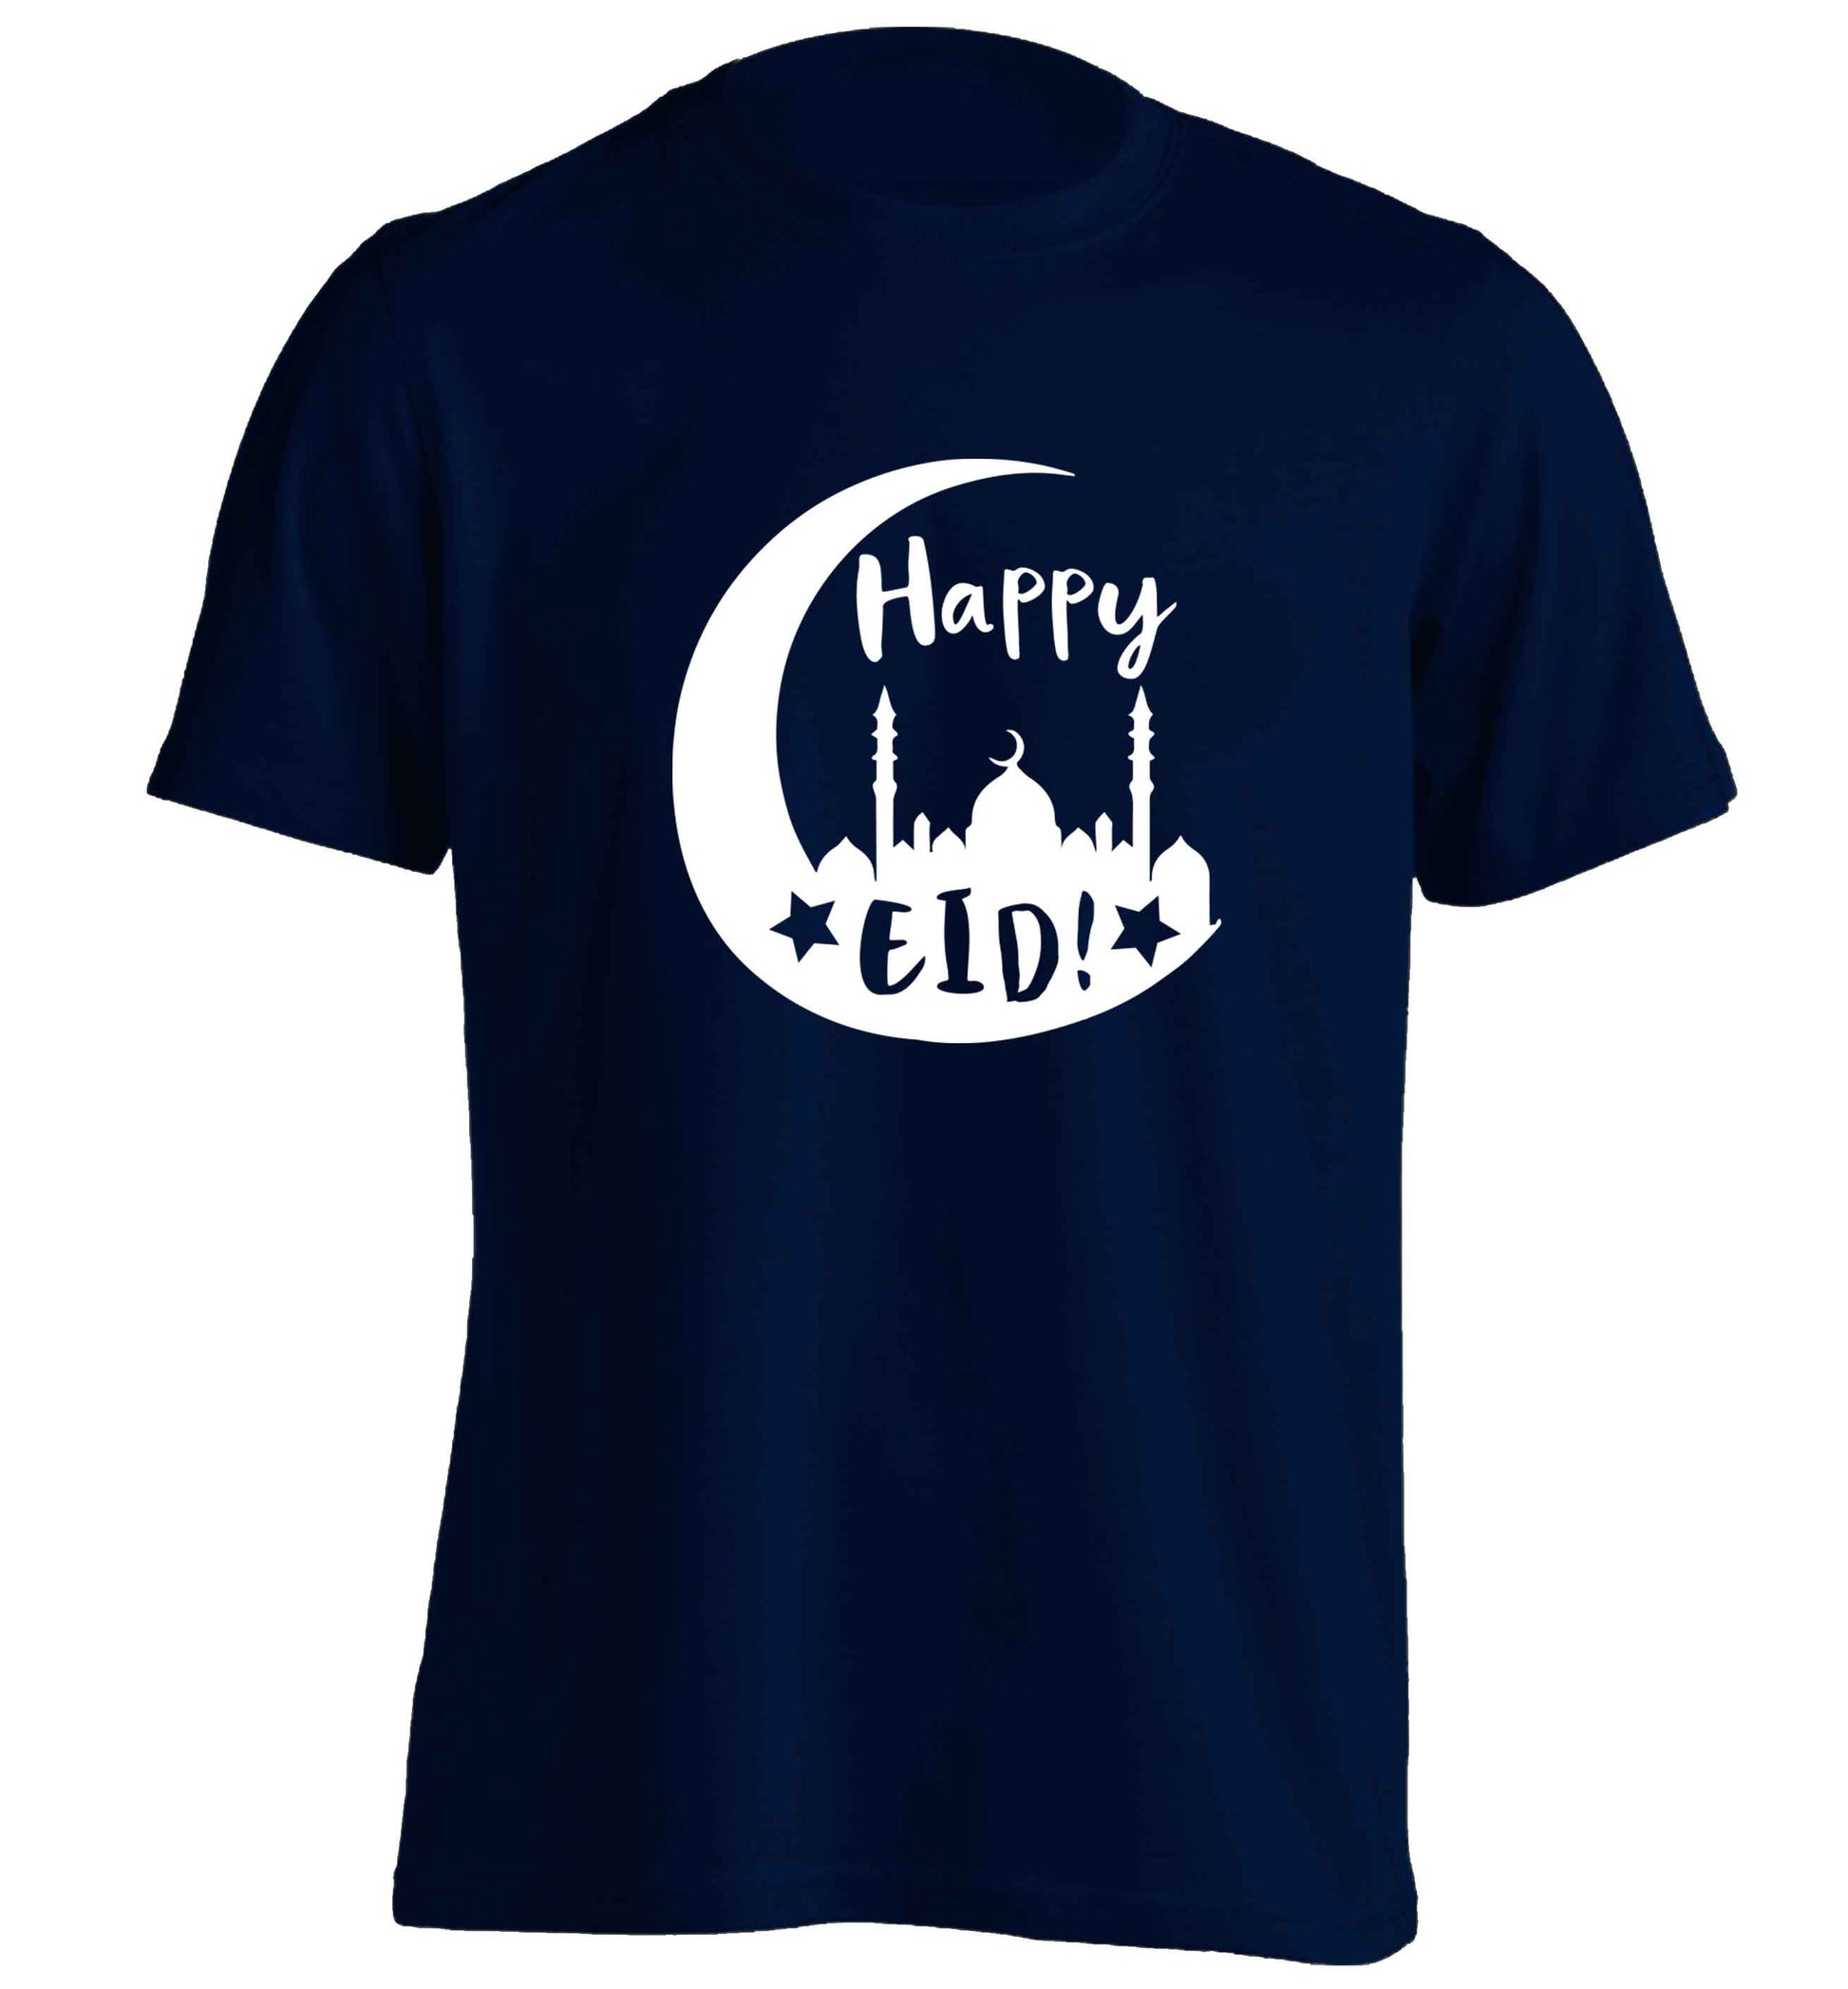 Happy Eid adults unisex navy Tshirt 2XL